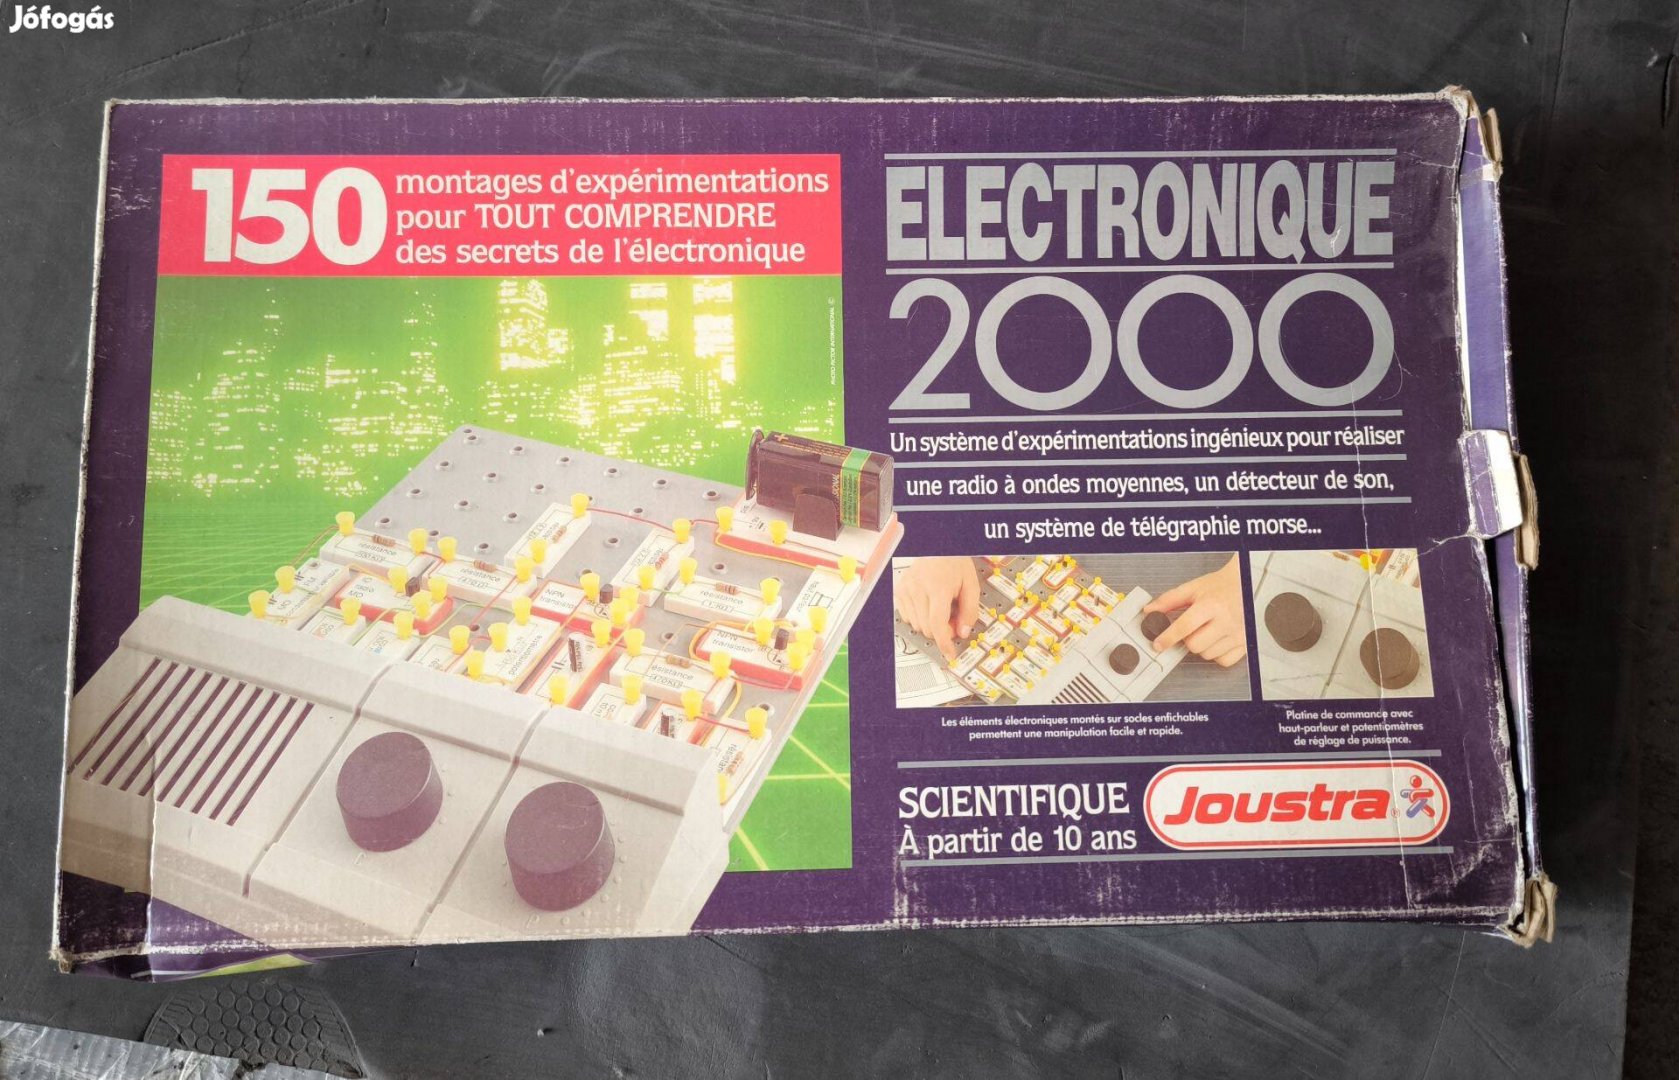 Retro elektronikai kísérletező készlet "Electronique 2000"